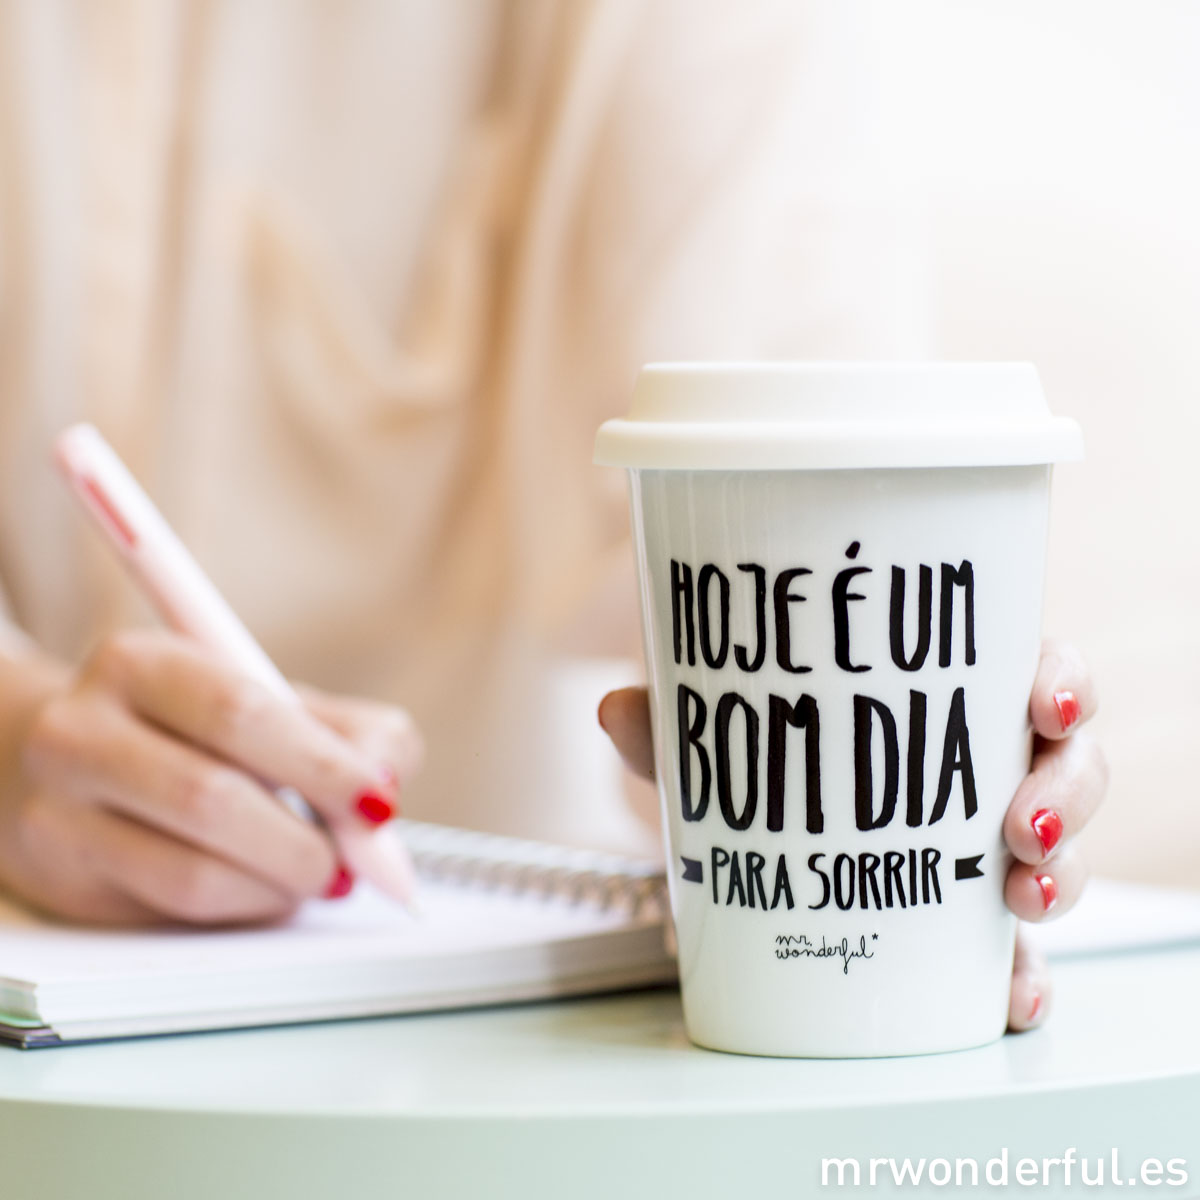 Mr.Wonderful take away portugués: Hoje é um bom dia para sorrir